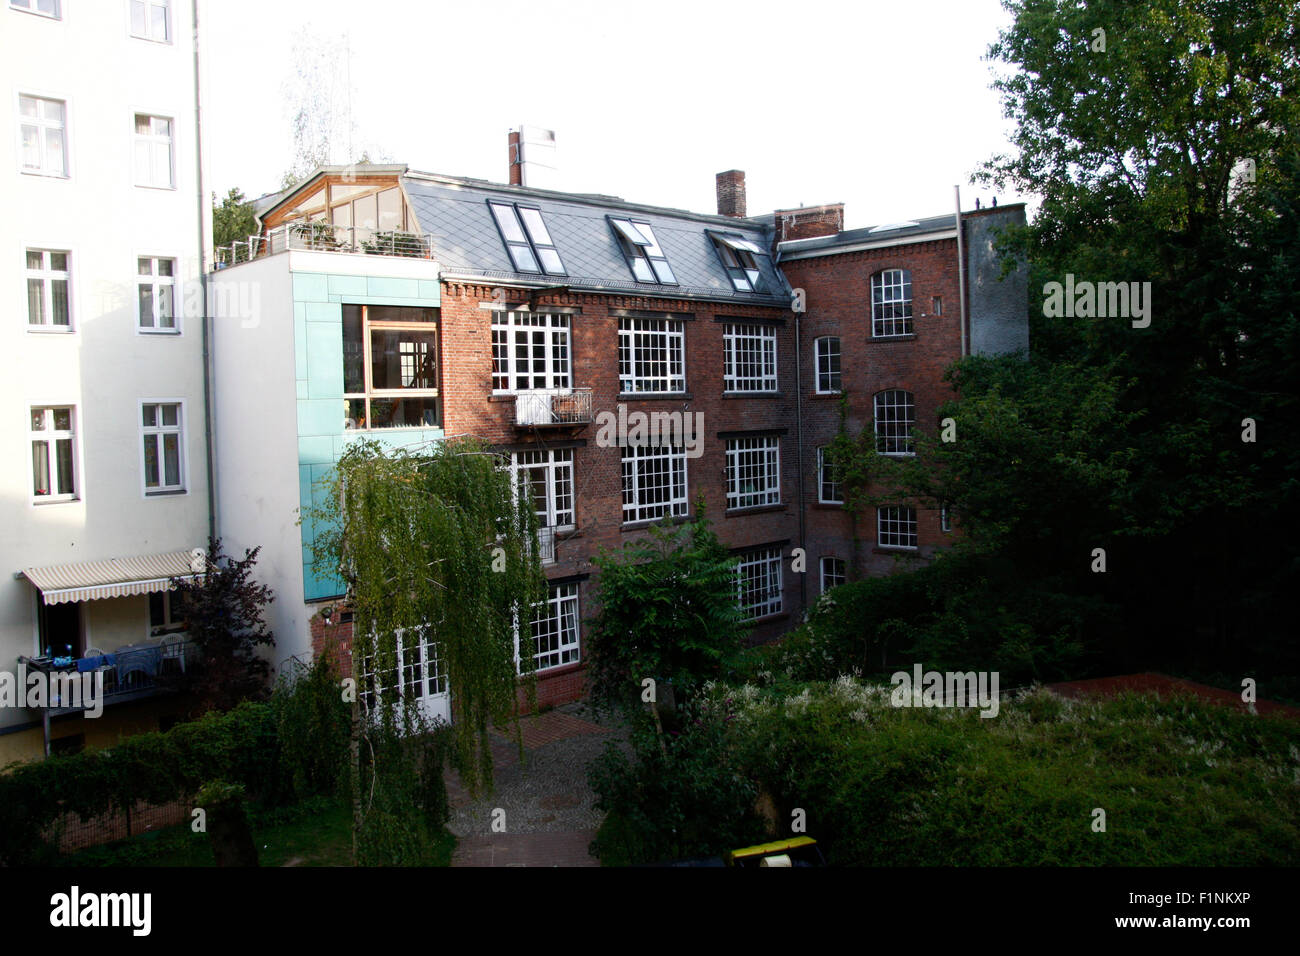 Ein Gartenhaus dans Tiergarten, das frueher » «legendaeren einmal von der Kommune 1' genutzt worden war. Banque D'Images